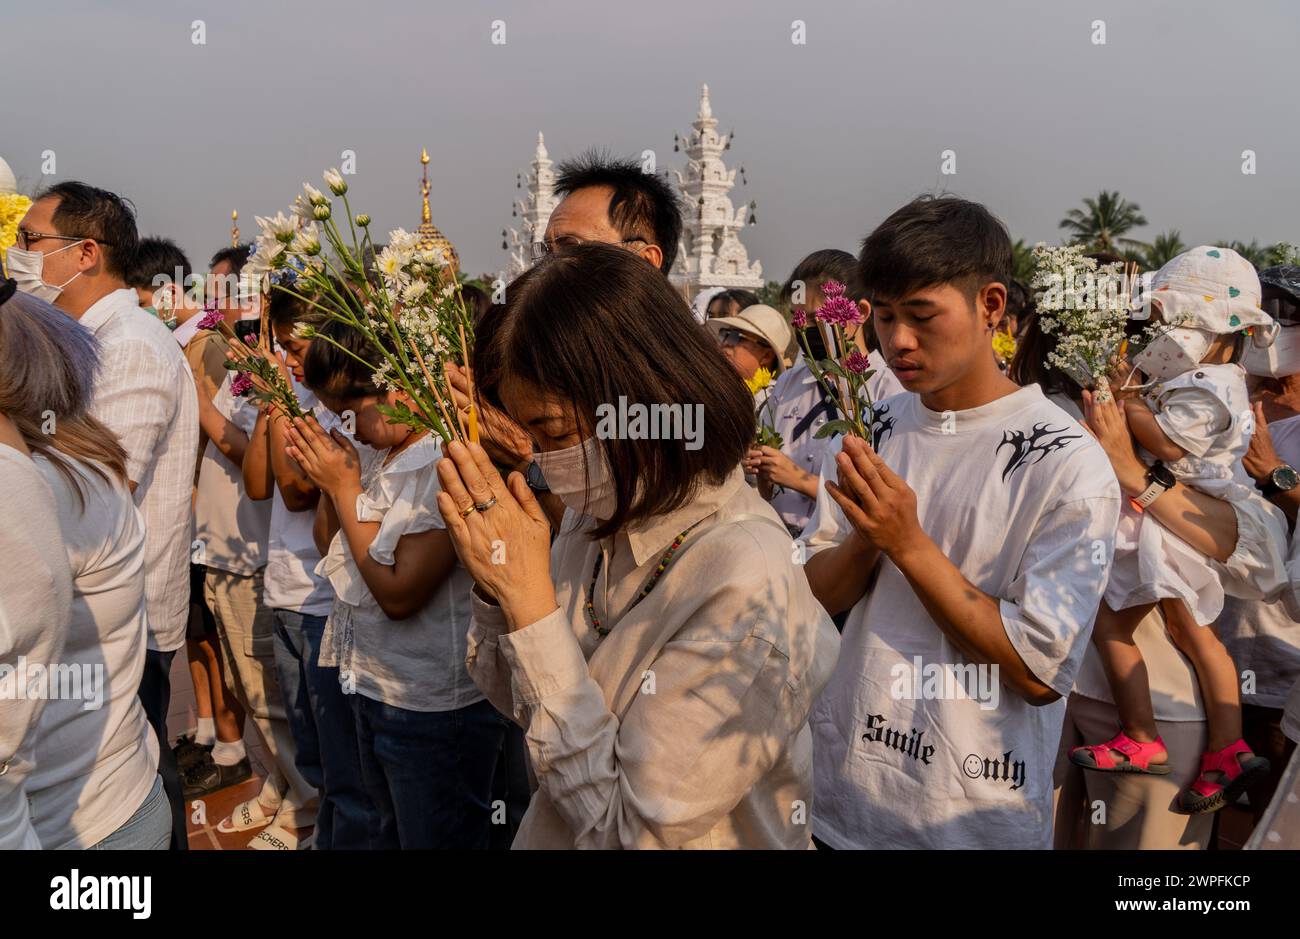 Gläubige, die an den buddhistischen Feierlichkeiten von Makha Bucha teilnehmen, bei denen Reliquien Buddhas im Royal Park Rajapruek in Chiang Mai, Thailand, aufbewahrt werden Stockfoto